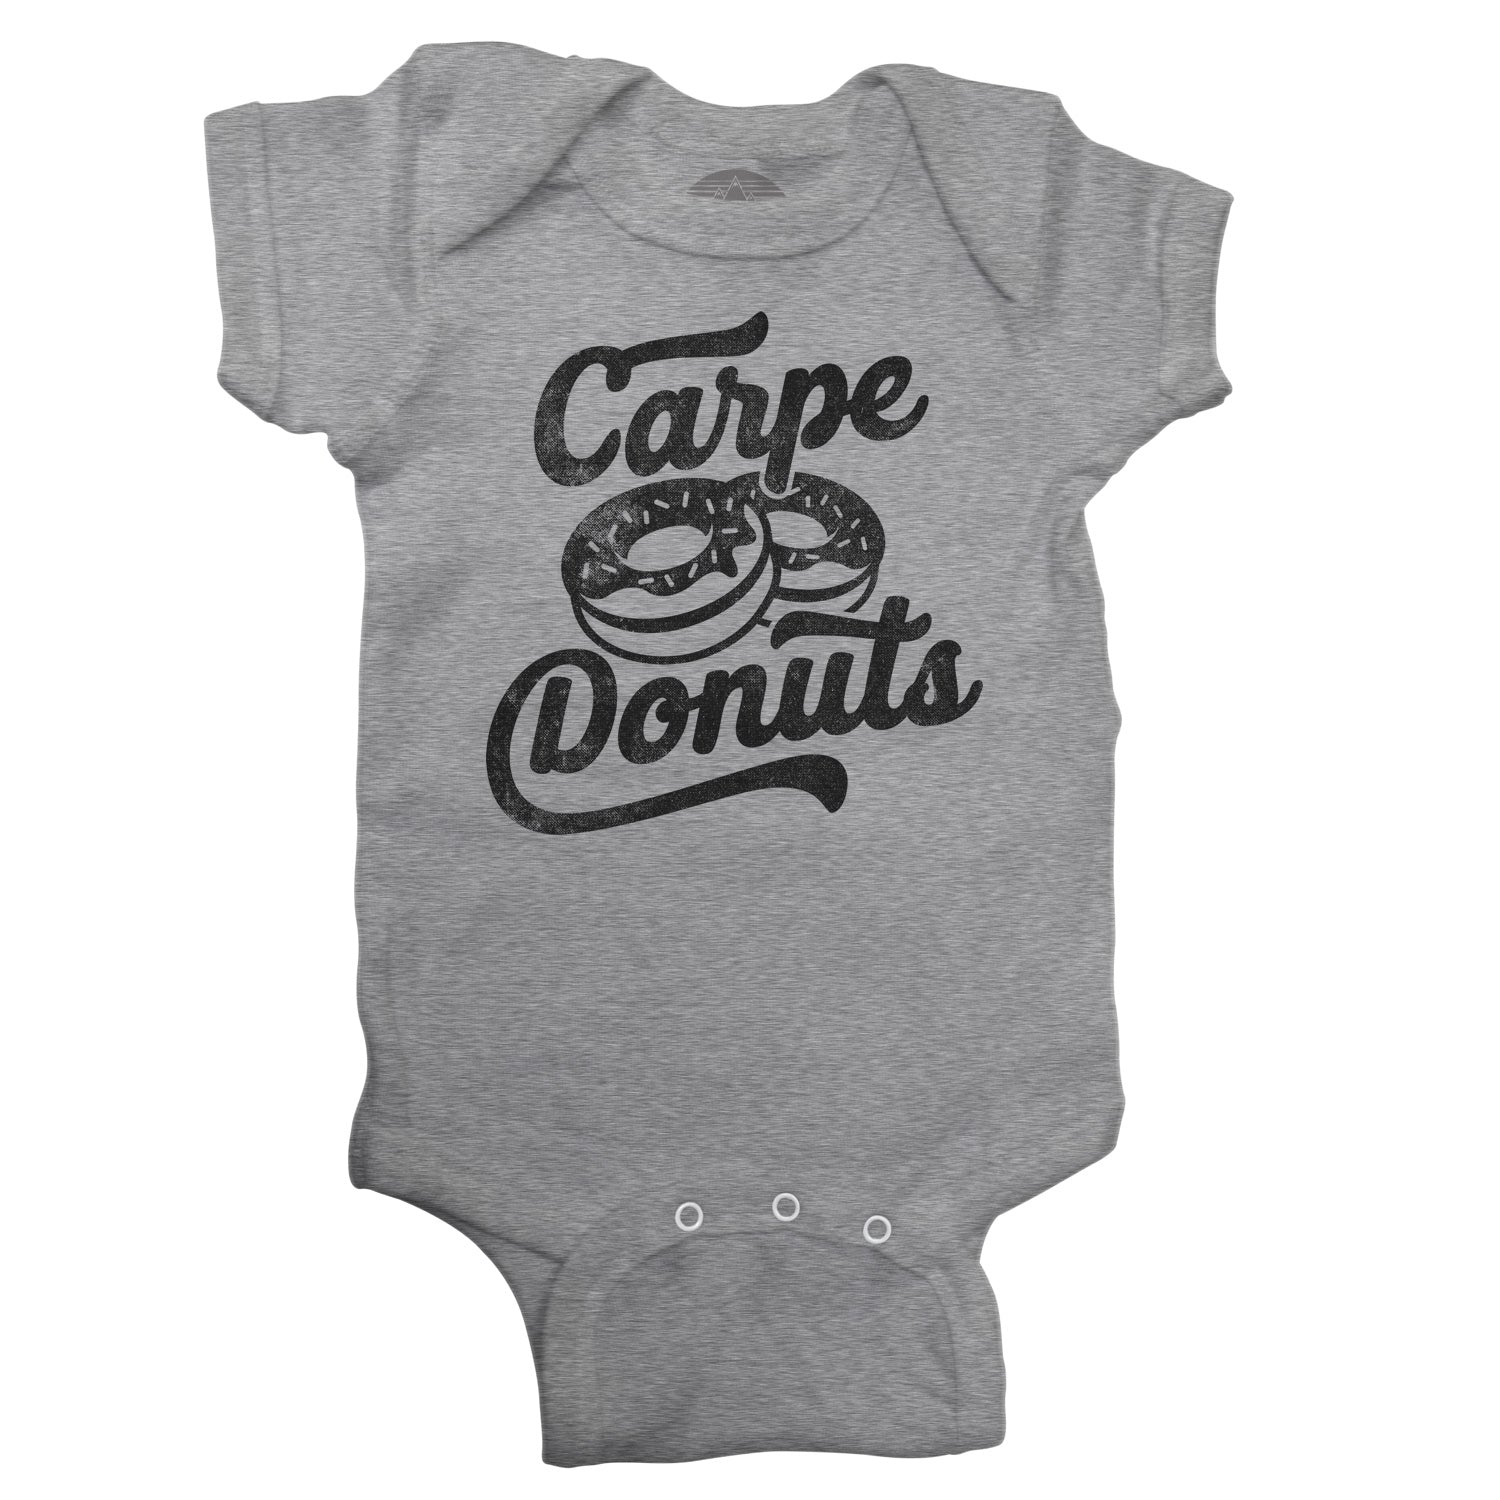 Carpe Donuts Infant Bodysuit - Unisex Fit